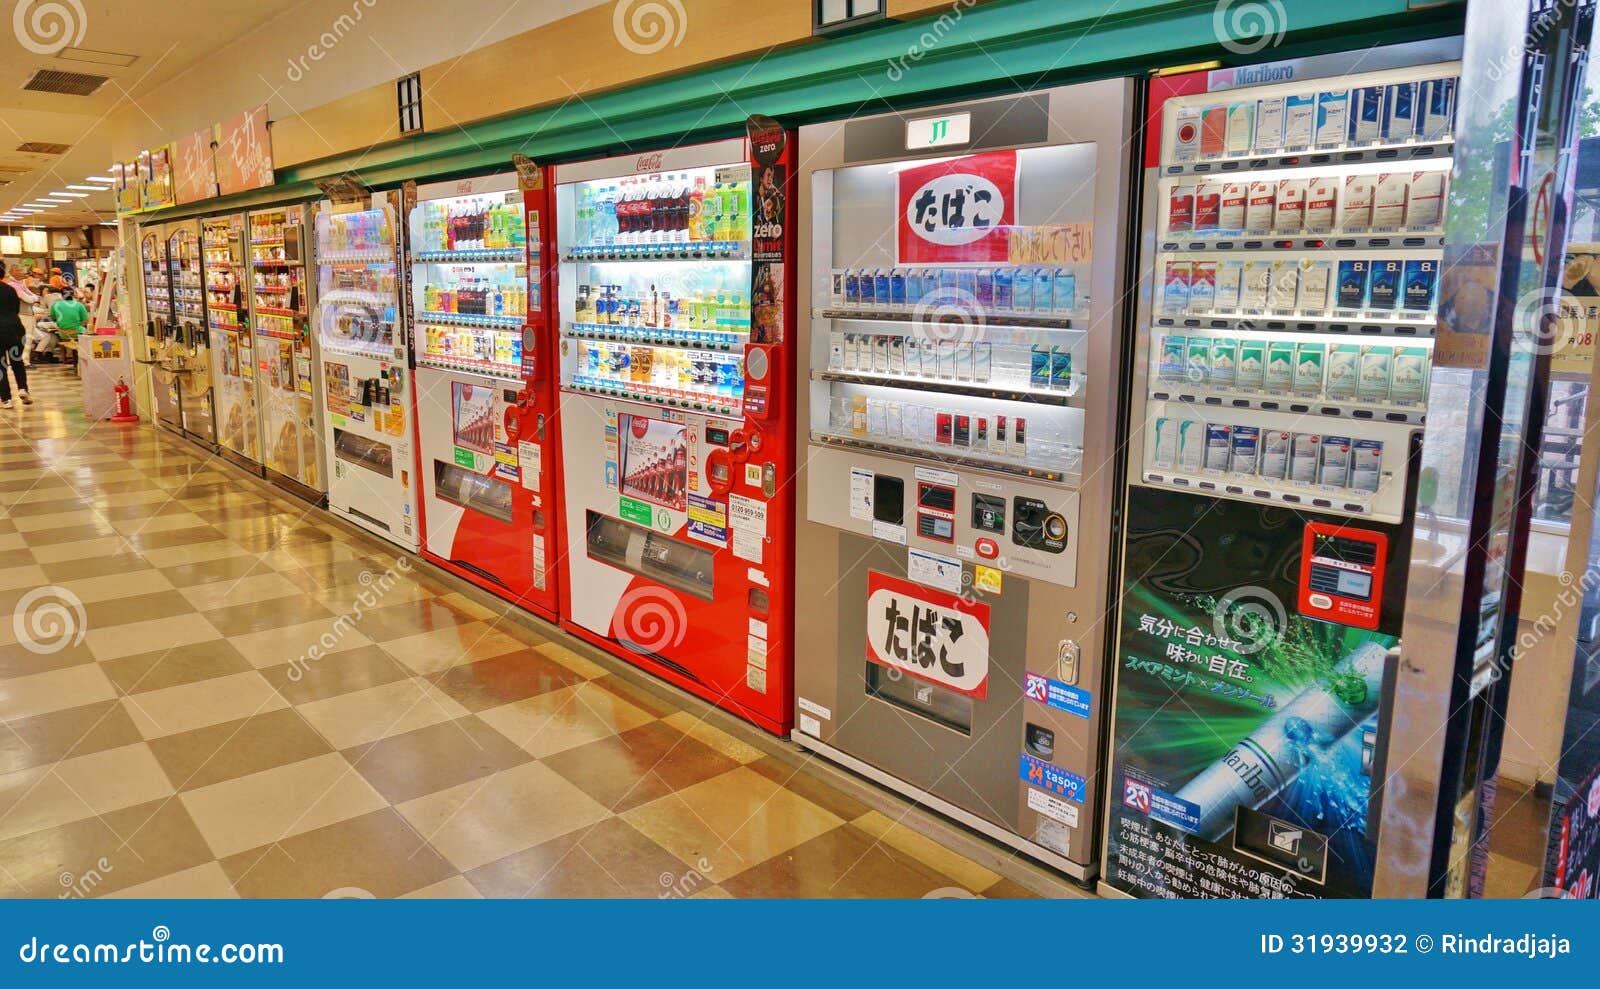 line-vending-machines-japan-selling-vari